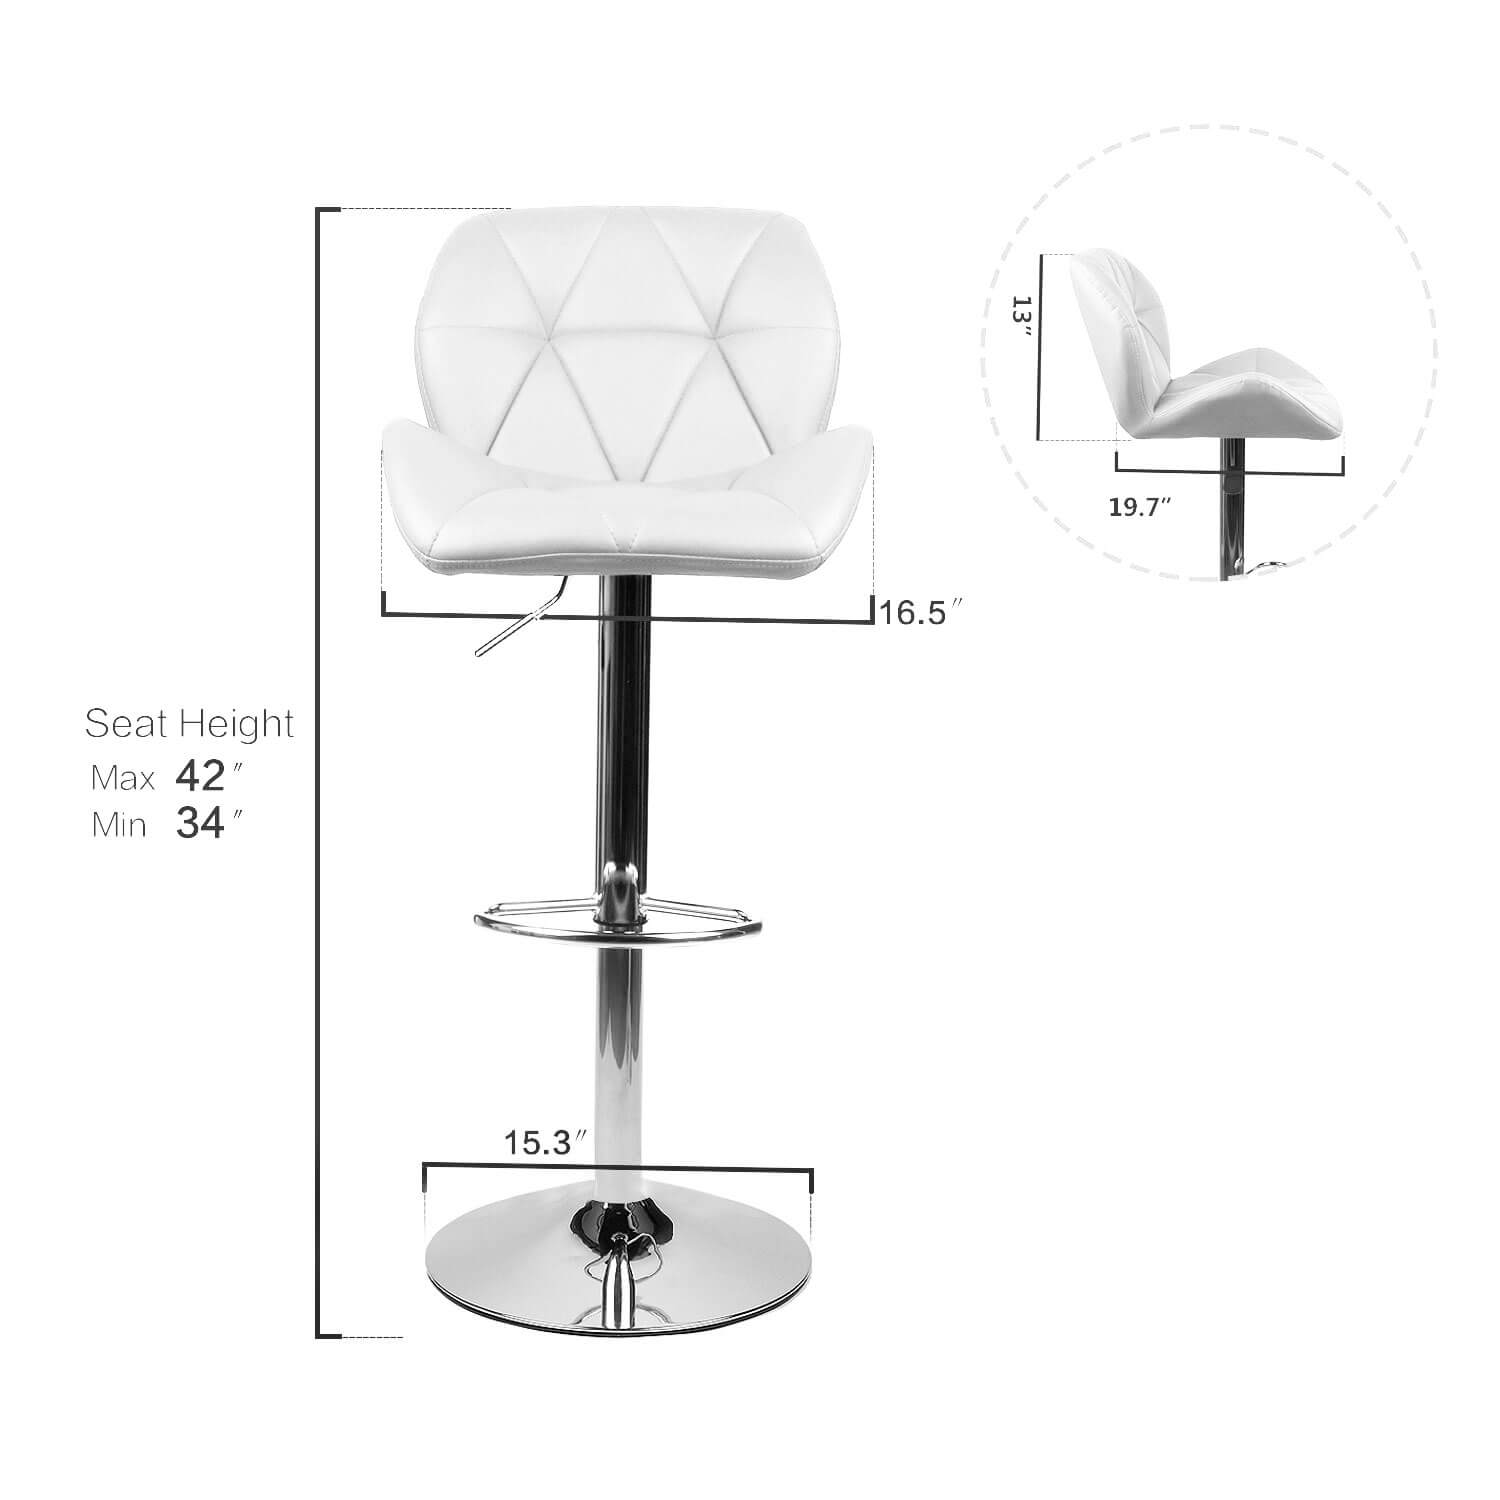 Elecwish white bar stool OW001 size